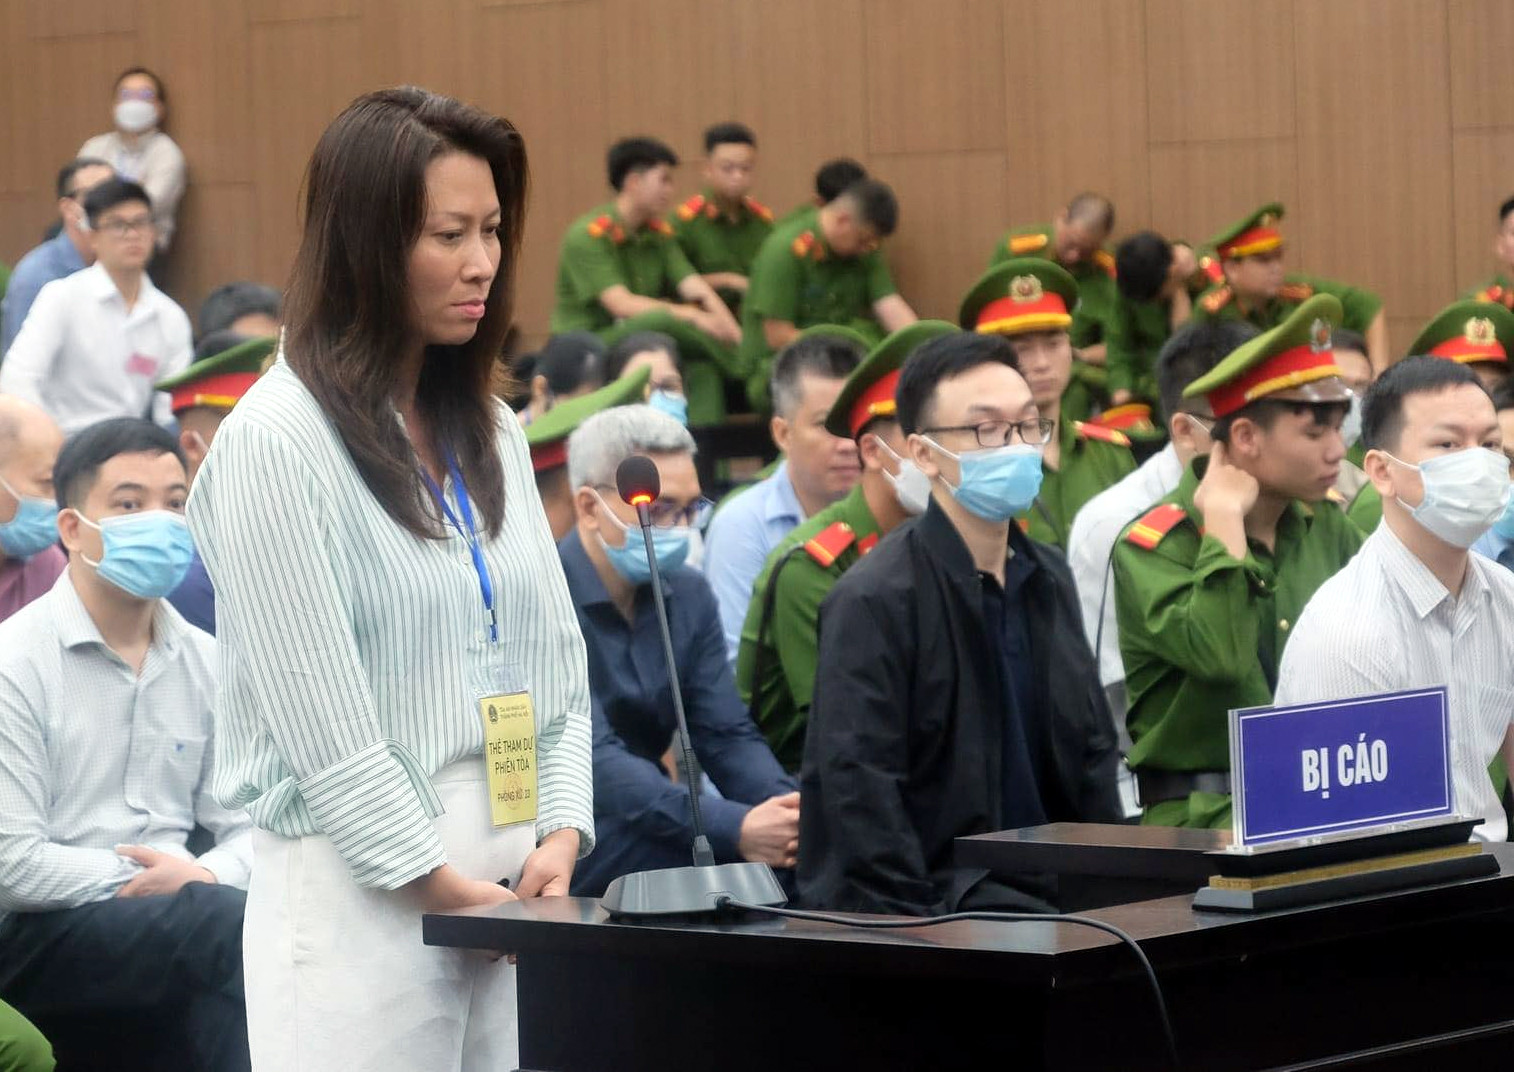 “Em gái” khóc, “xin đi tù thay” cựu Thiếu tướng Nguyễn Anh Tuấn - Ảnh 1.